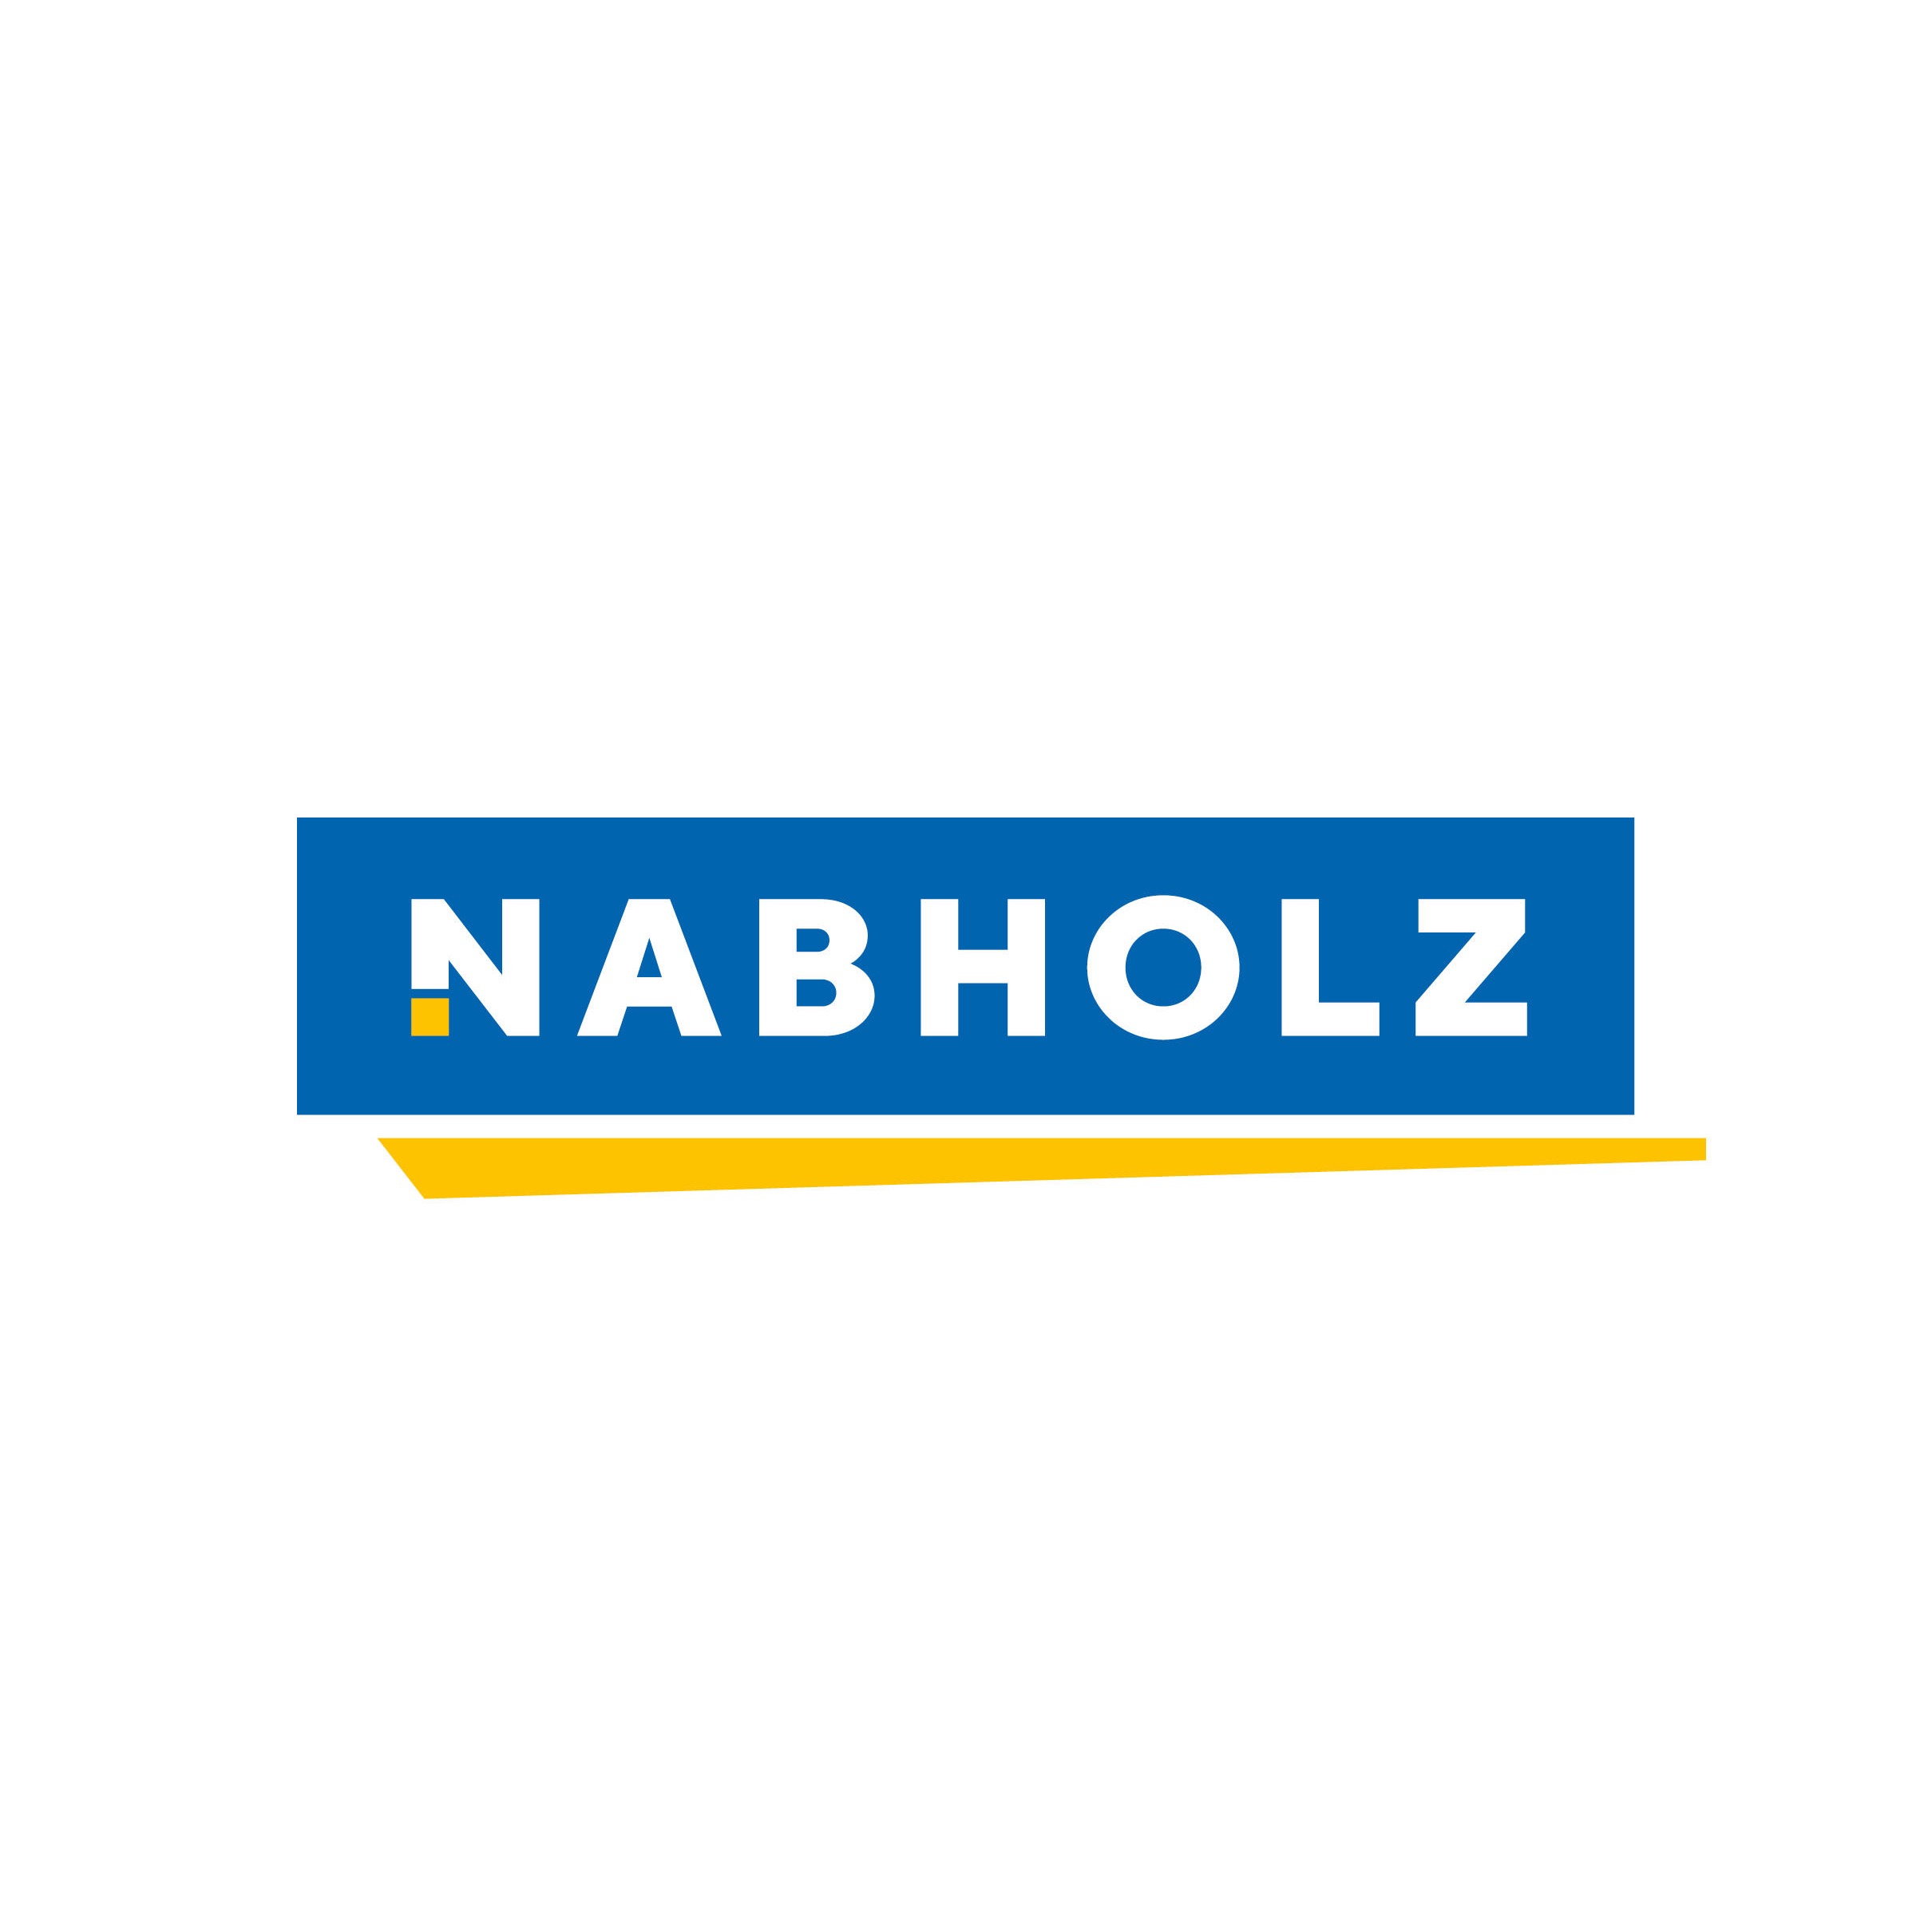 Heinrich Nabholz Autoreifen GmbH Logo